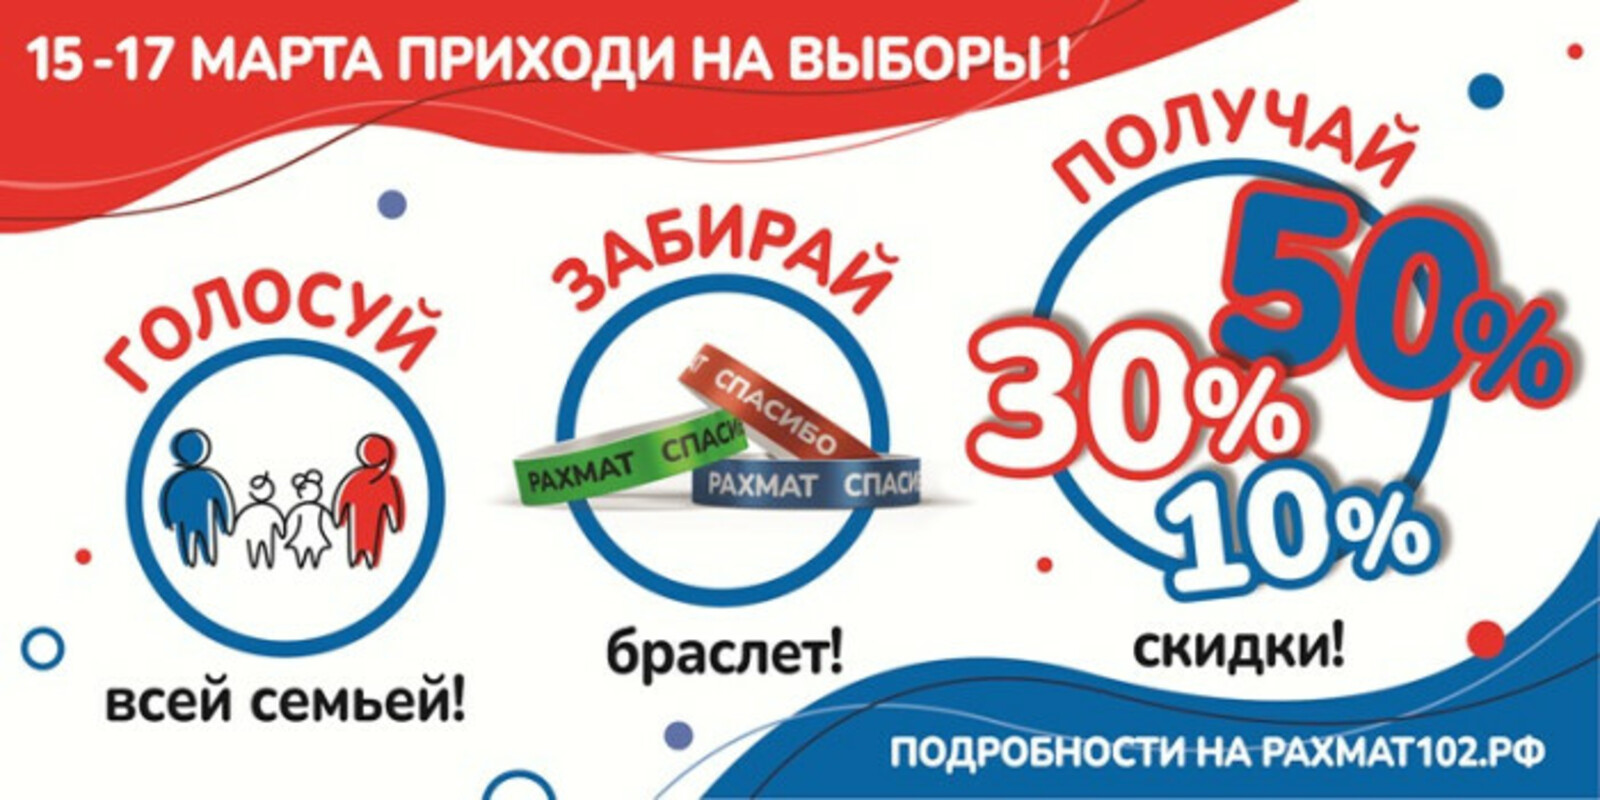 Жителей Башкирии приглашают прийти на выборы Президента России #всейсемьей